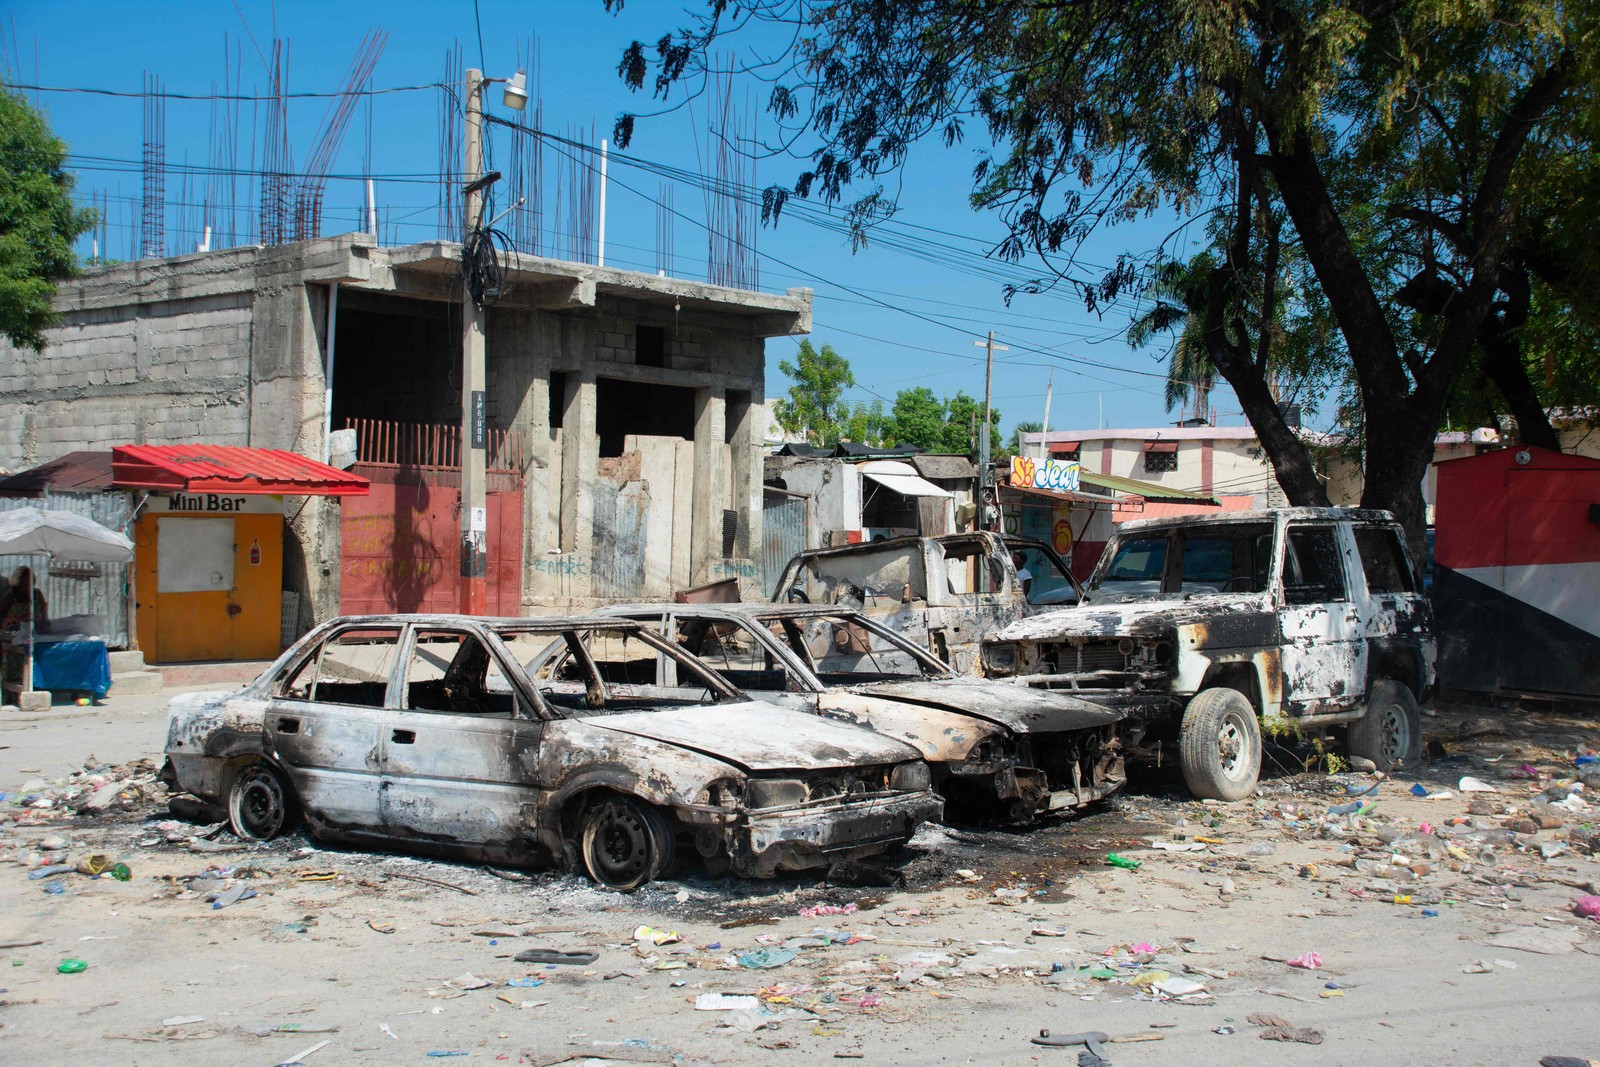 Veículos carbonizados permanecem estacionados enquanto a violência das gangues aumenta em Porto Príncipe, Haiti. — Foto: Clarens SIFFROY / AFP